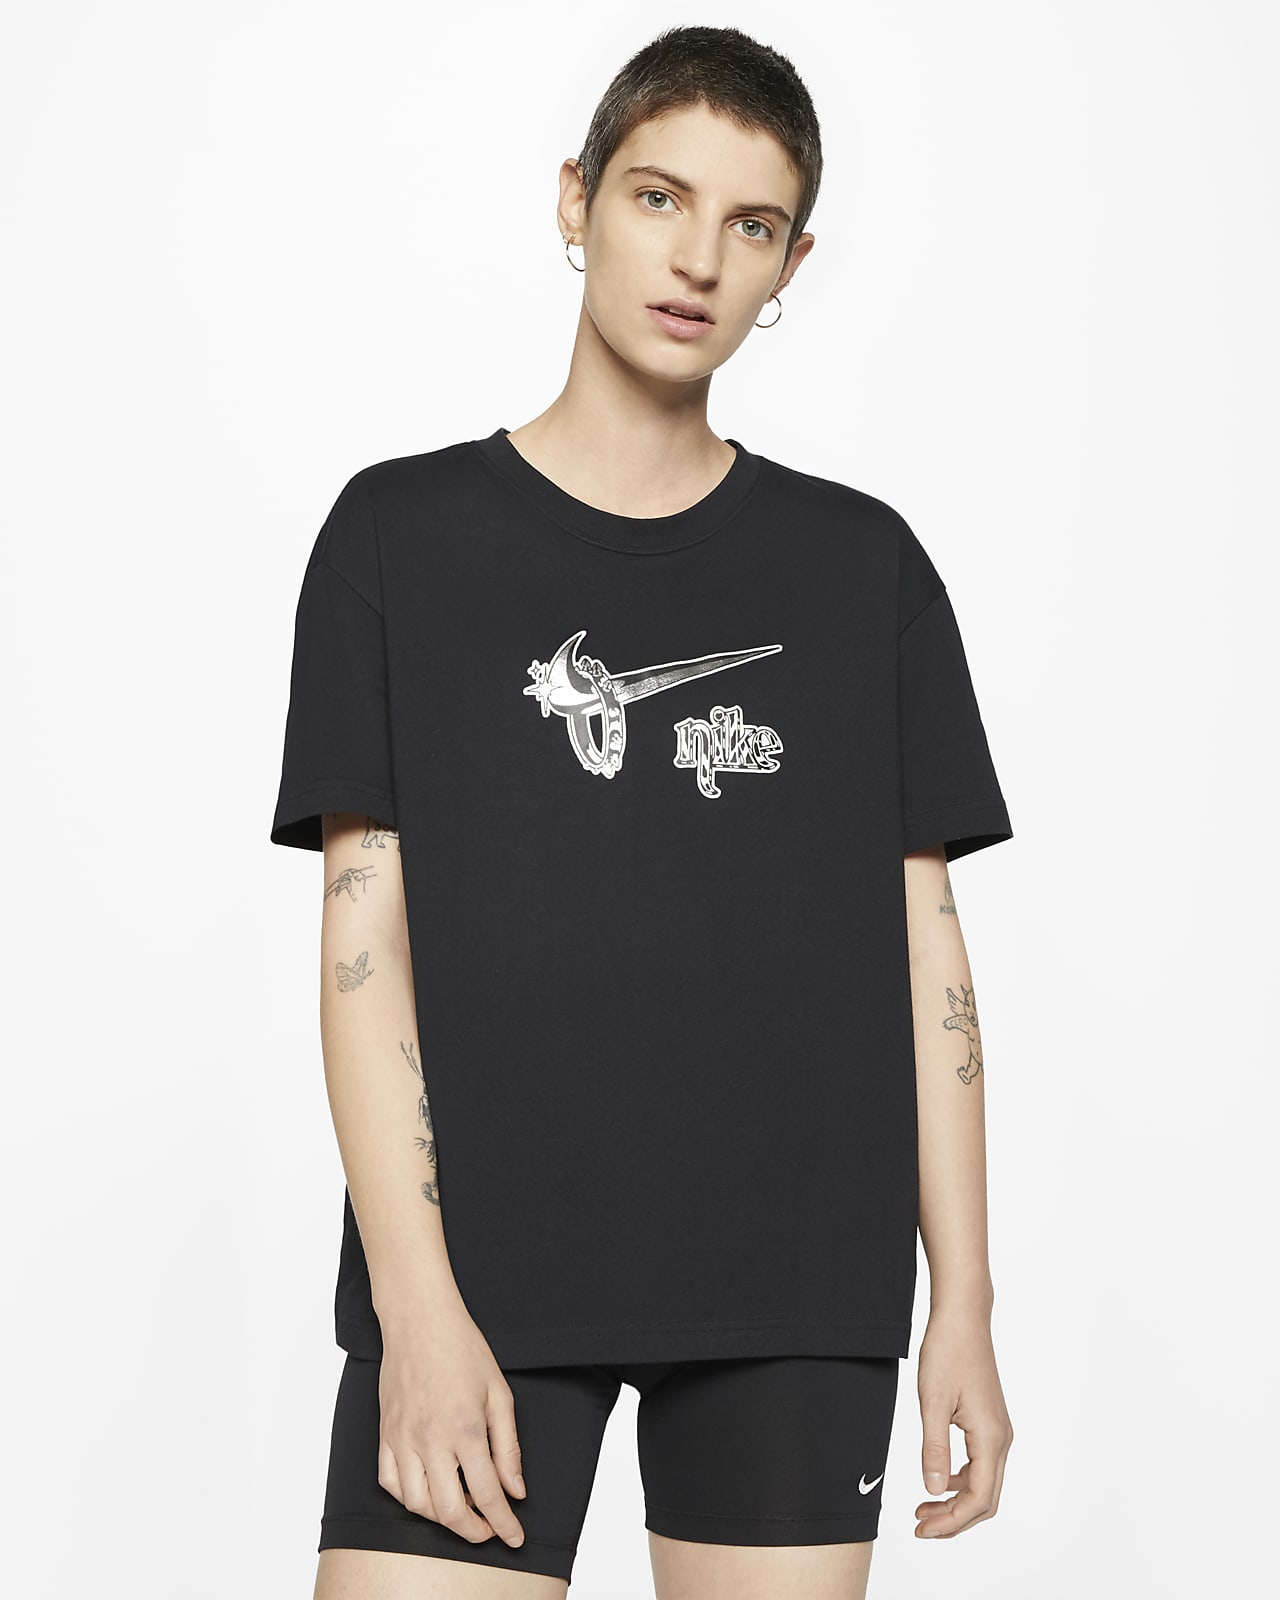 Boyfriend Fit T-Shirt. Nike GB